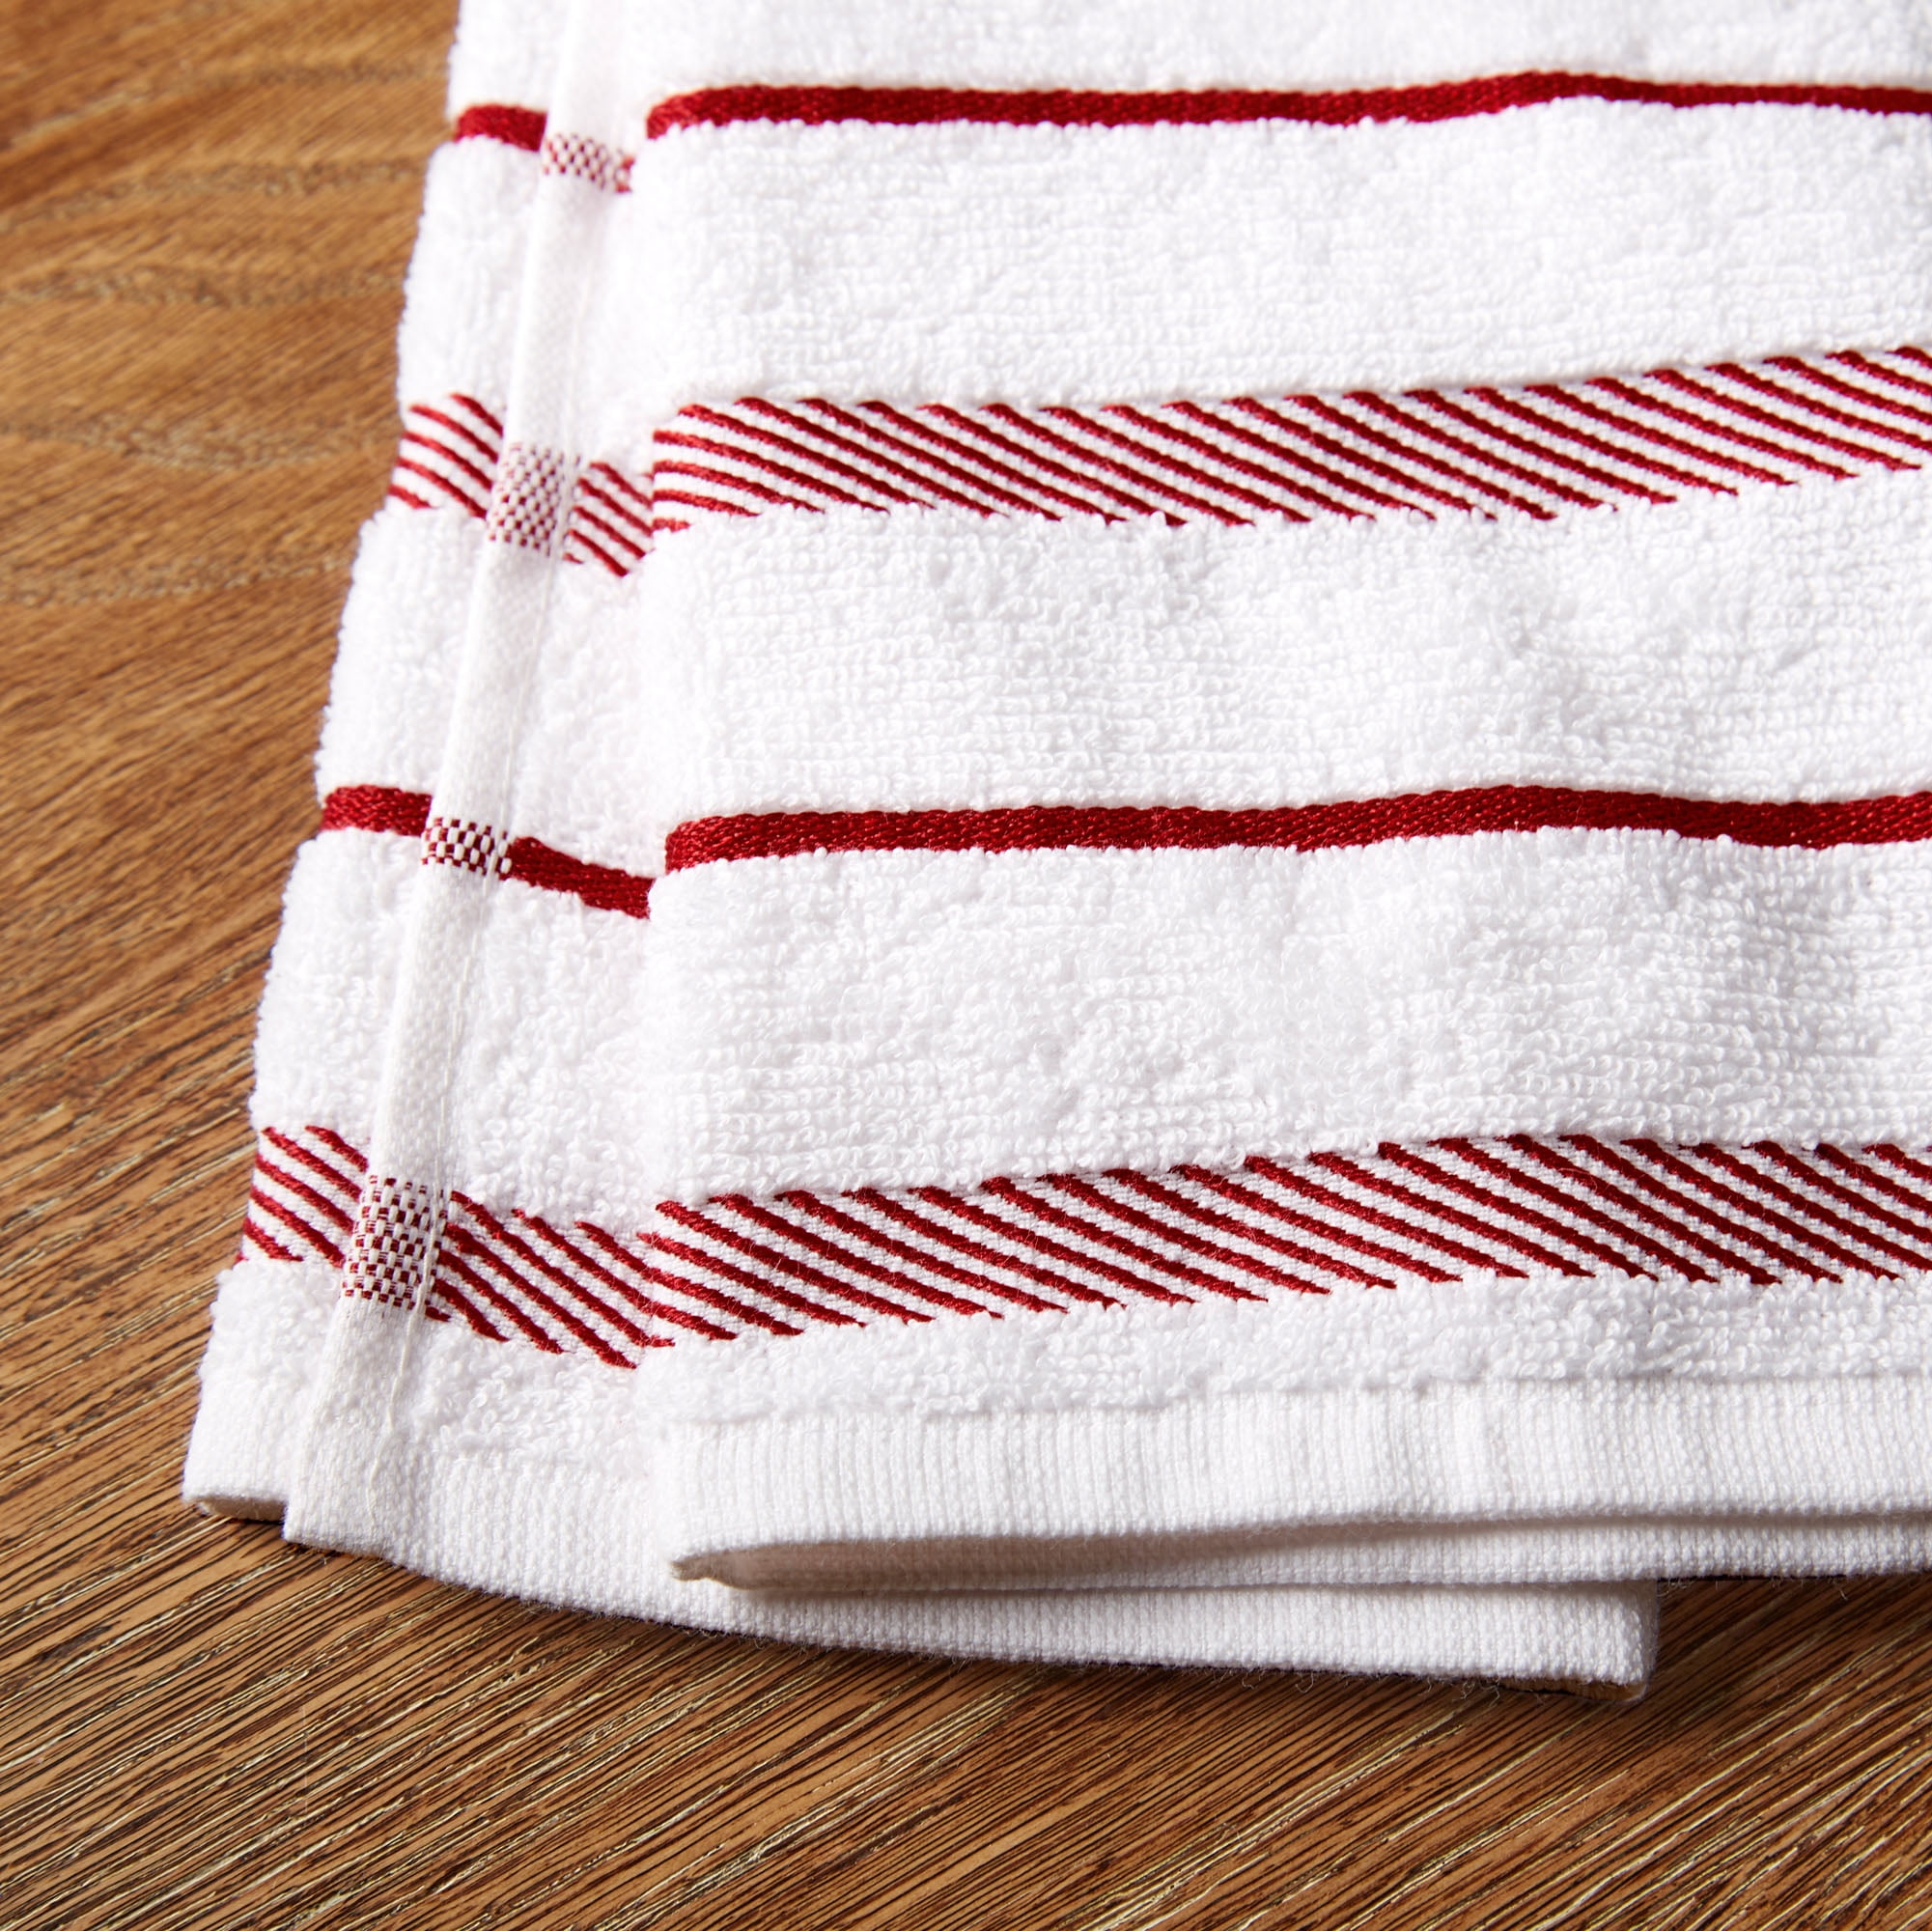  KitchenAid Albany Kitchen Towel 4-Pack Set, Cotton, Aqua/White,  16x26 : Home & Kitchen